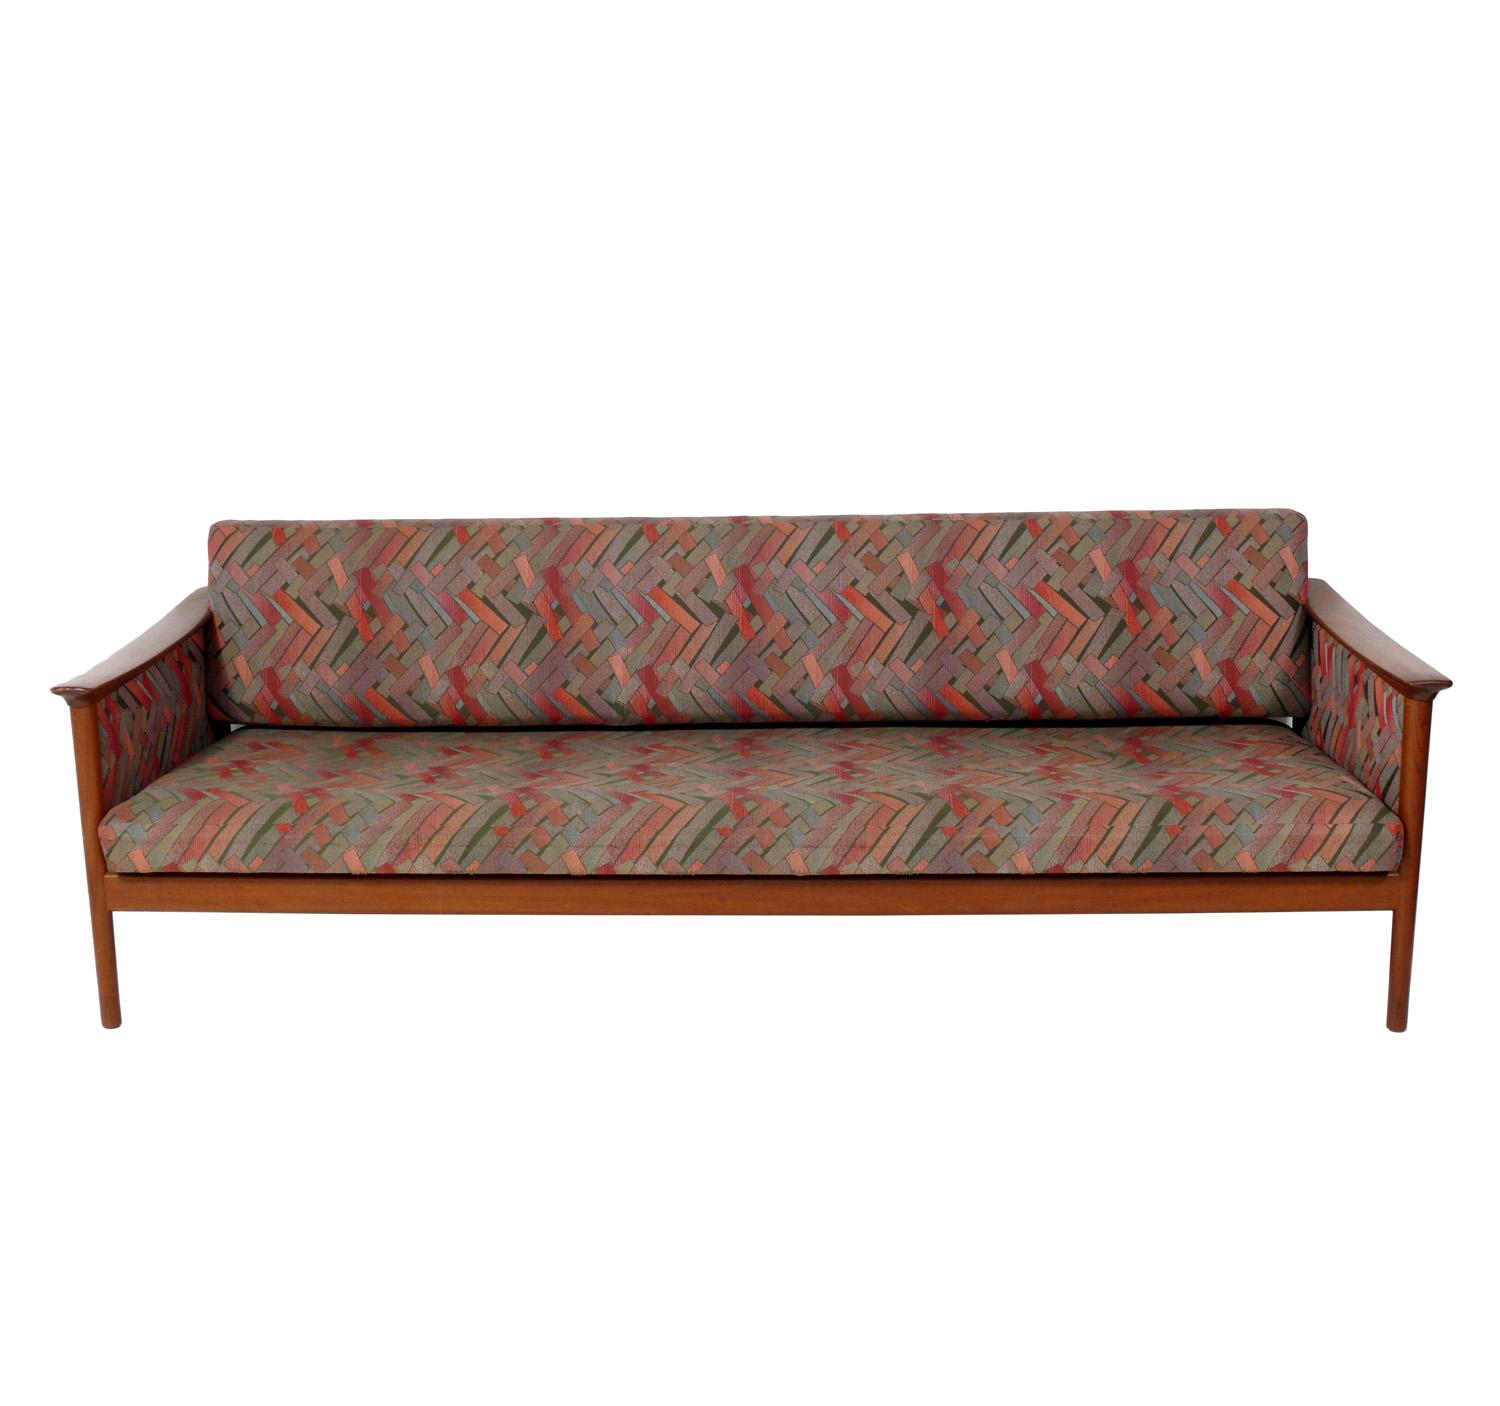 Modernes dänisches Teakholzsofa, Dänemark, ca. 1960er Jahre. Dieses Sofa wird gerade neu gepolstert und kann mit Ihrem Stoff ergänzt werden. Der angegebene Preis beinhaltet die Neupolsterung in Ihrem Stoff. Schicken Sie uns einfach 16 Meter Ihres